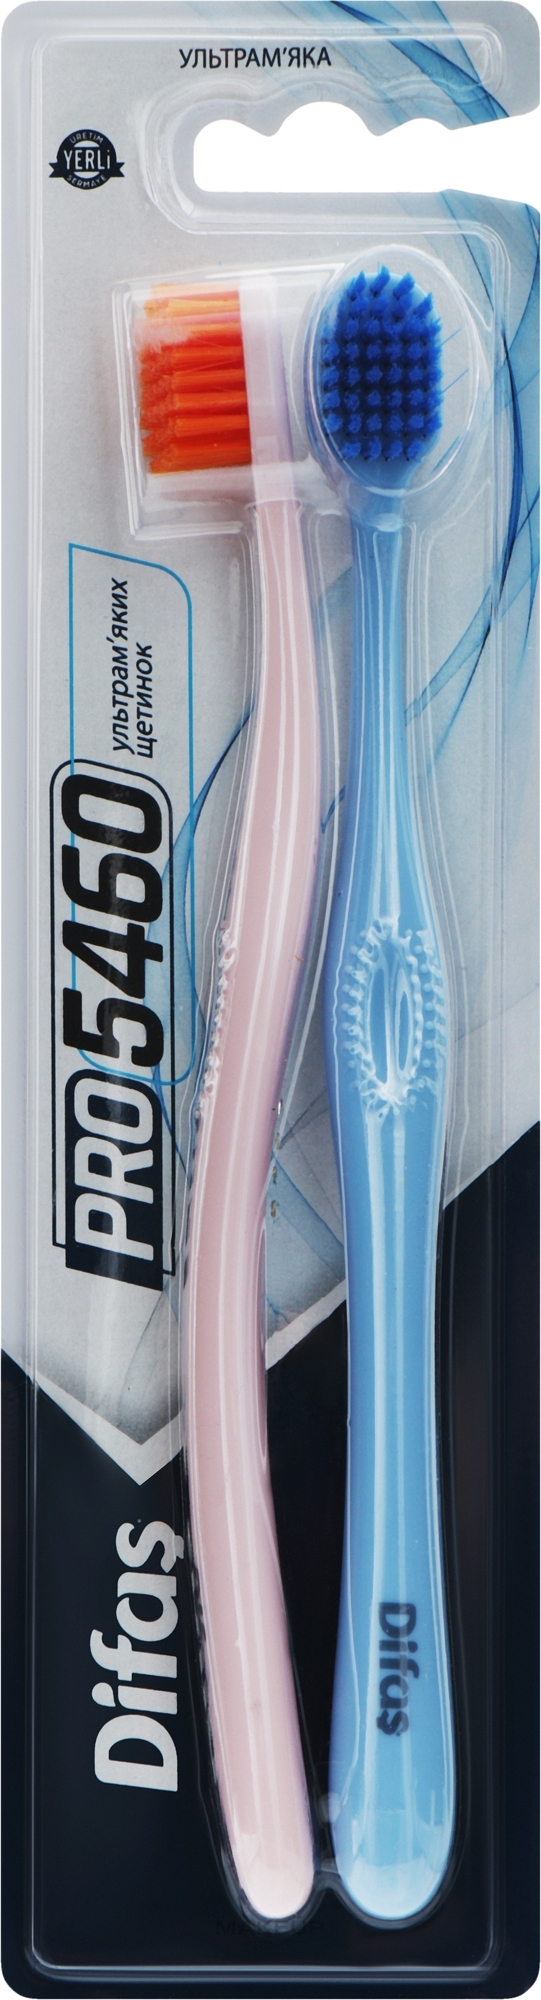 Набор зубных щеток "Ultra Soft", розовая + голубая - Difas PRO 5460 — фото 2шт